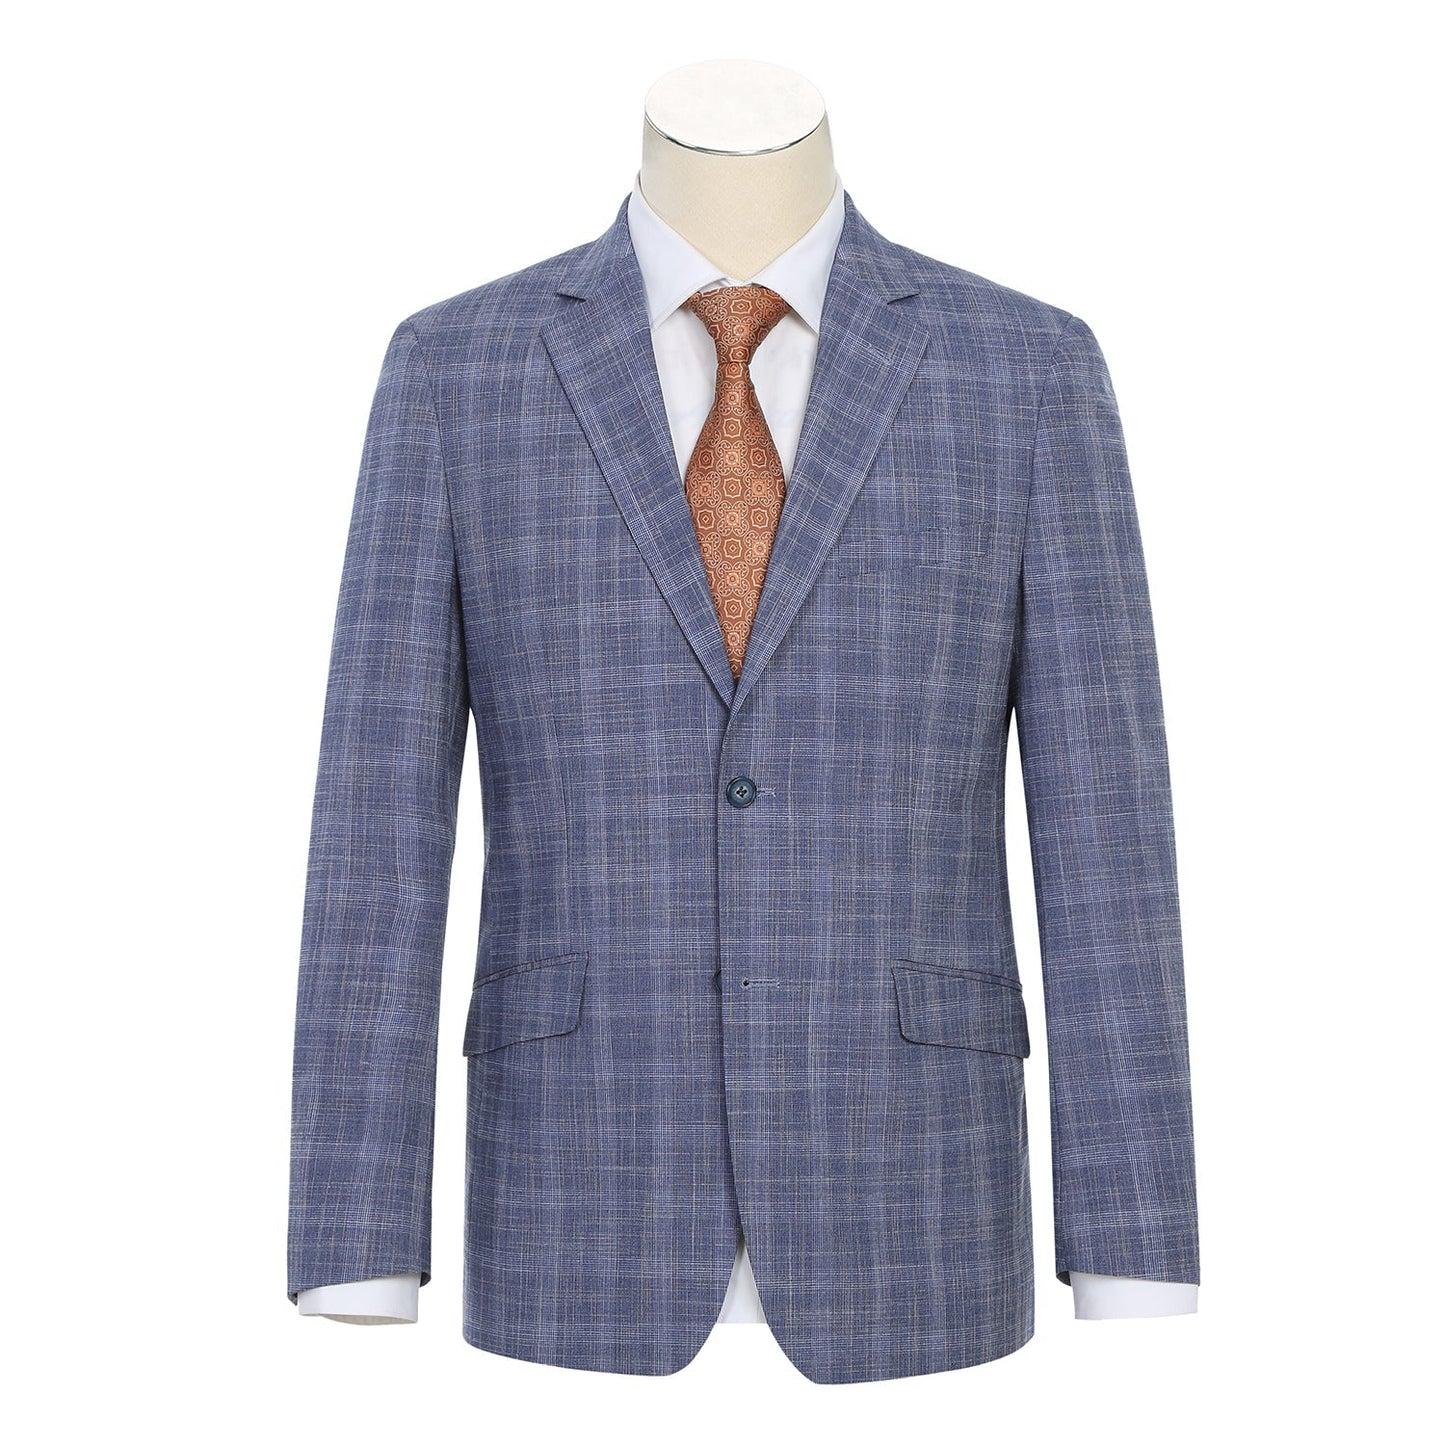 293-24 Men's Slim Fit Light Blue Plaid Suit